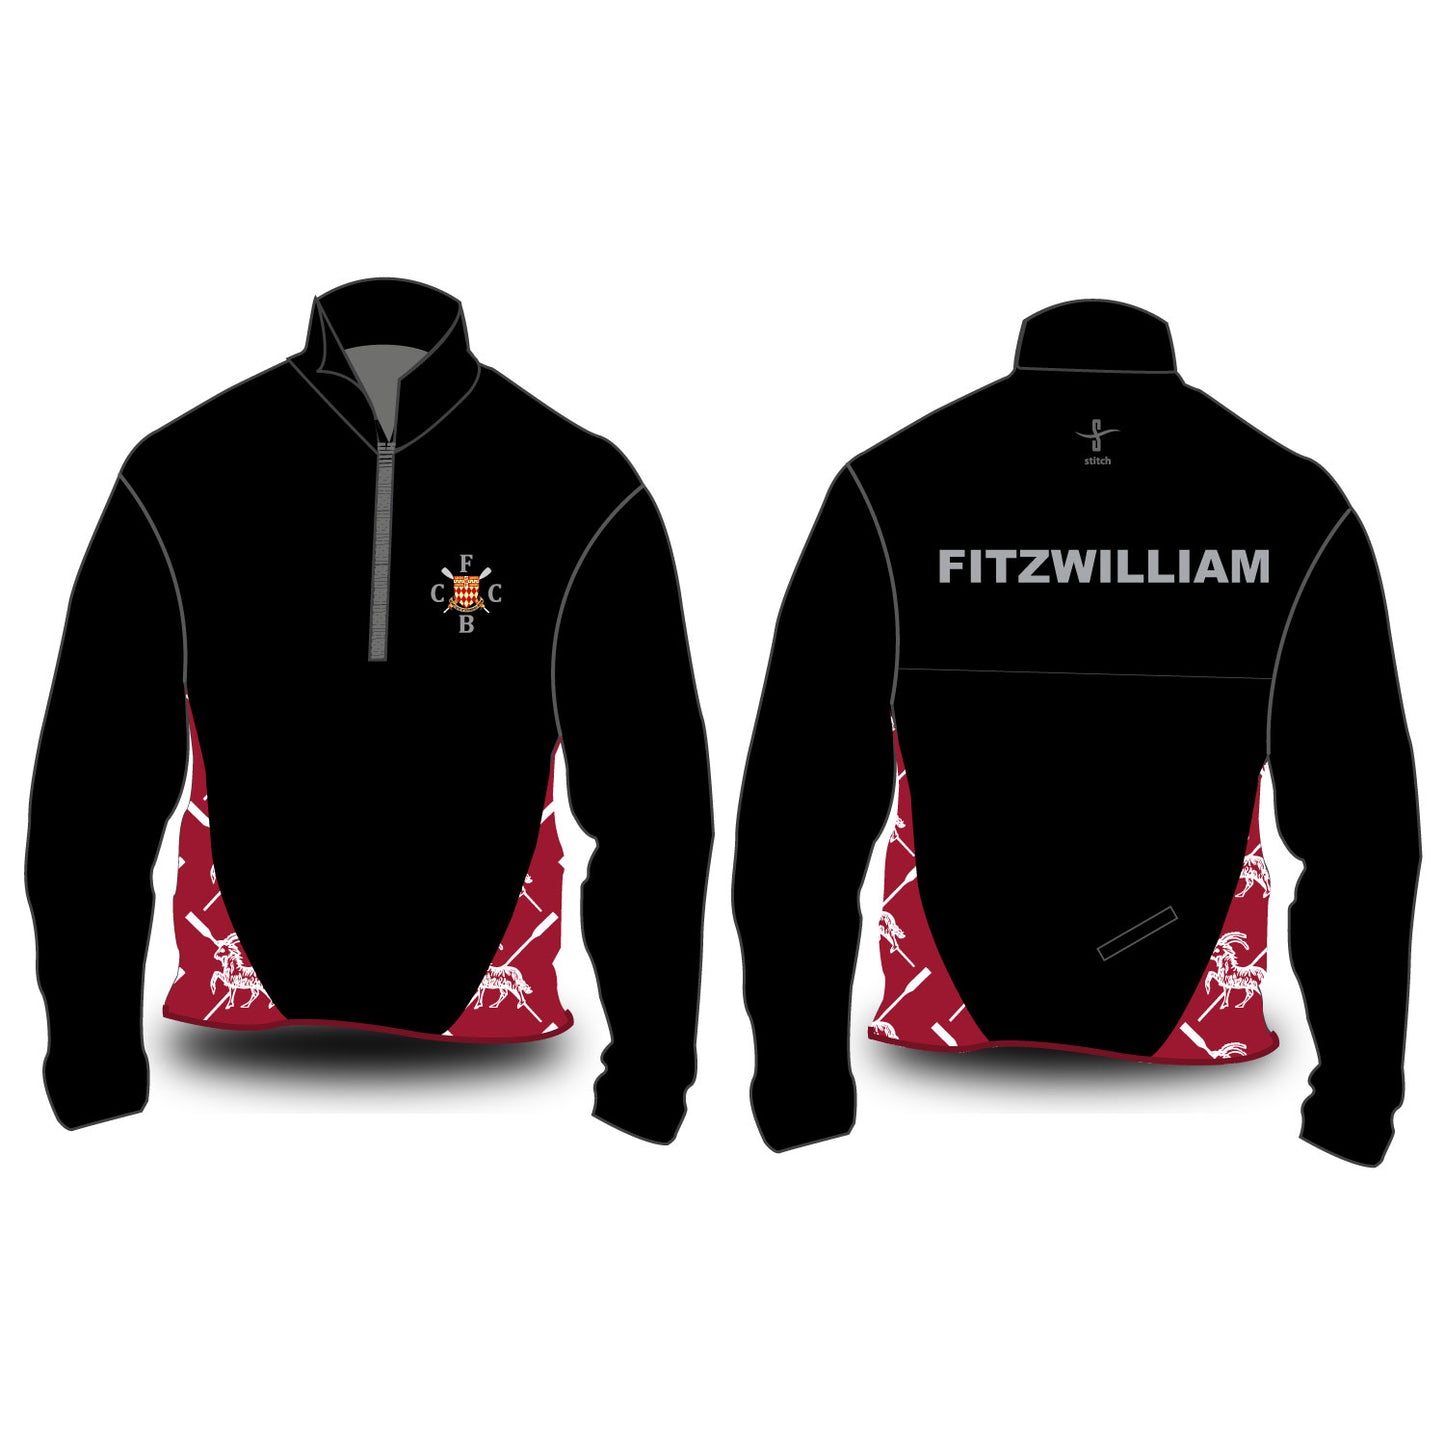 Fitzwilliam Goat Softshell Jacket